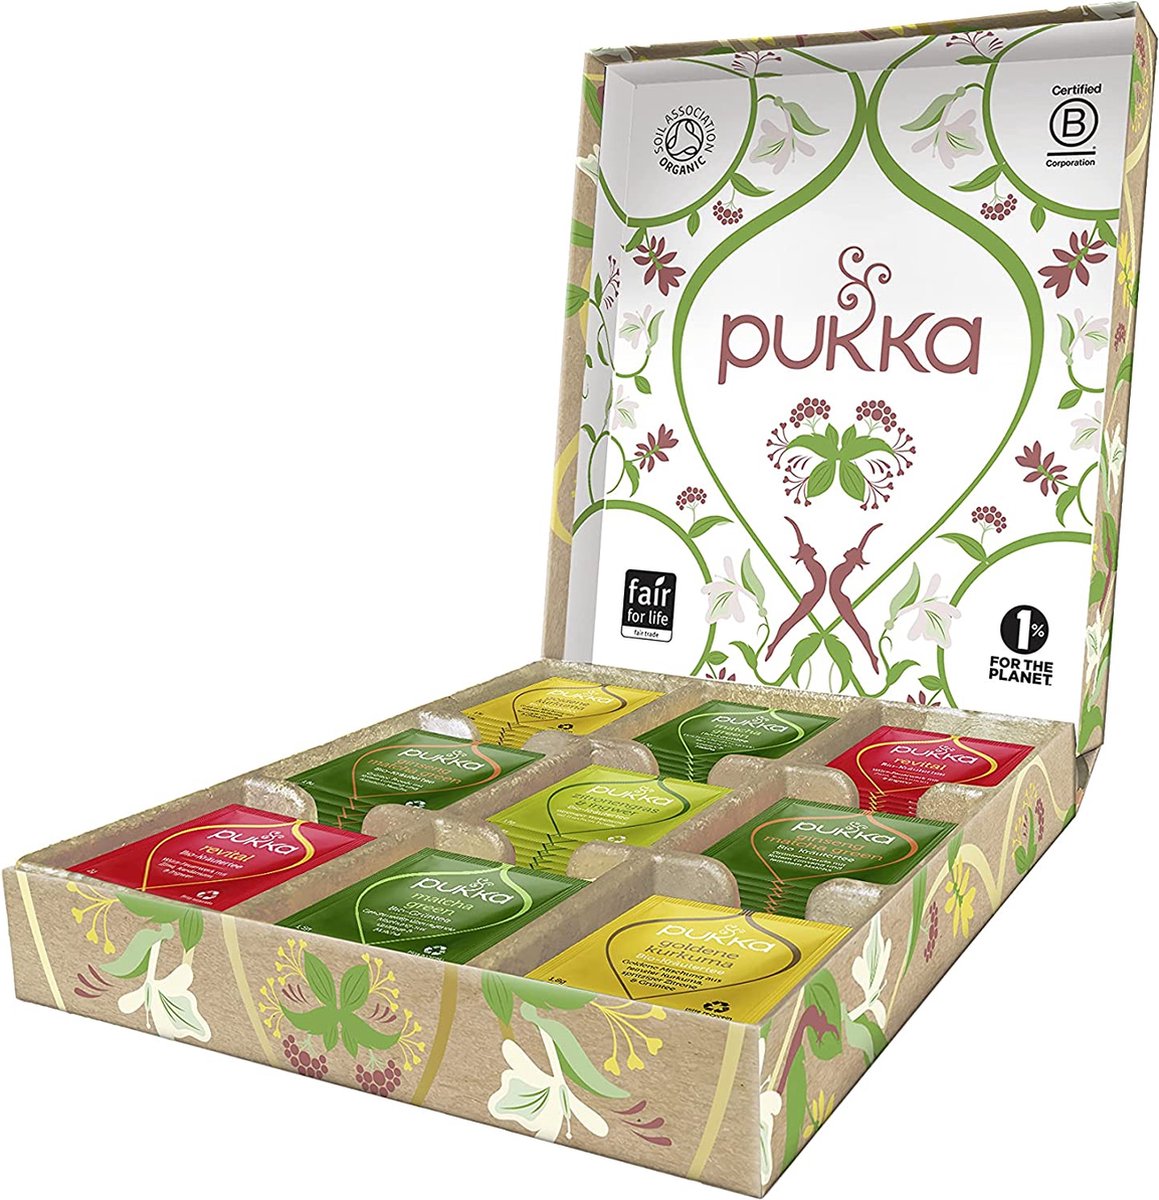 Pukka Active Kruidenthee Geschenkdoos - 5 blends biologische kruidenthee, ook leuk als verjaardagscadeau - 45 zakjes - Theedoos - GB-BIO-05 - Pukka